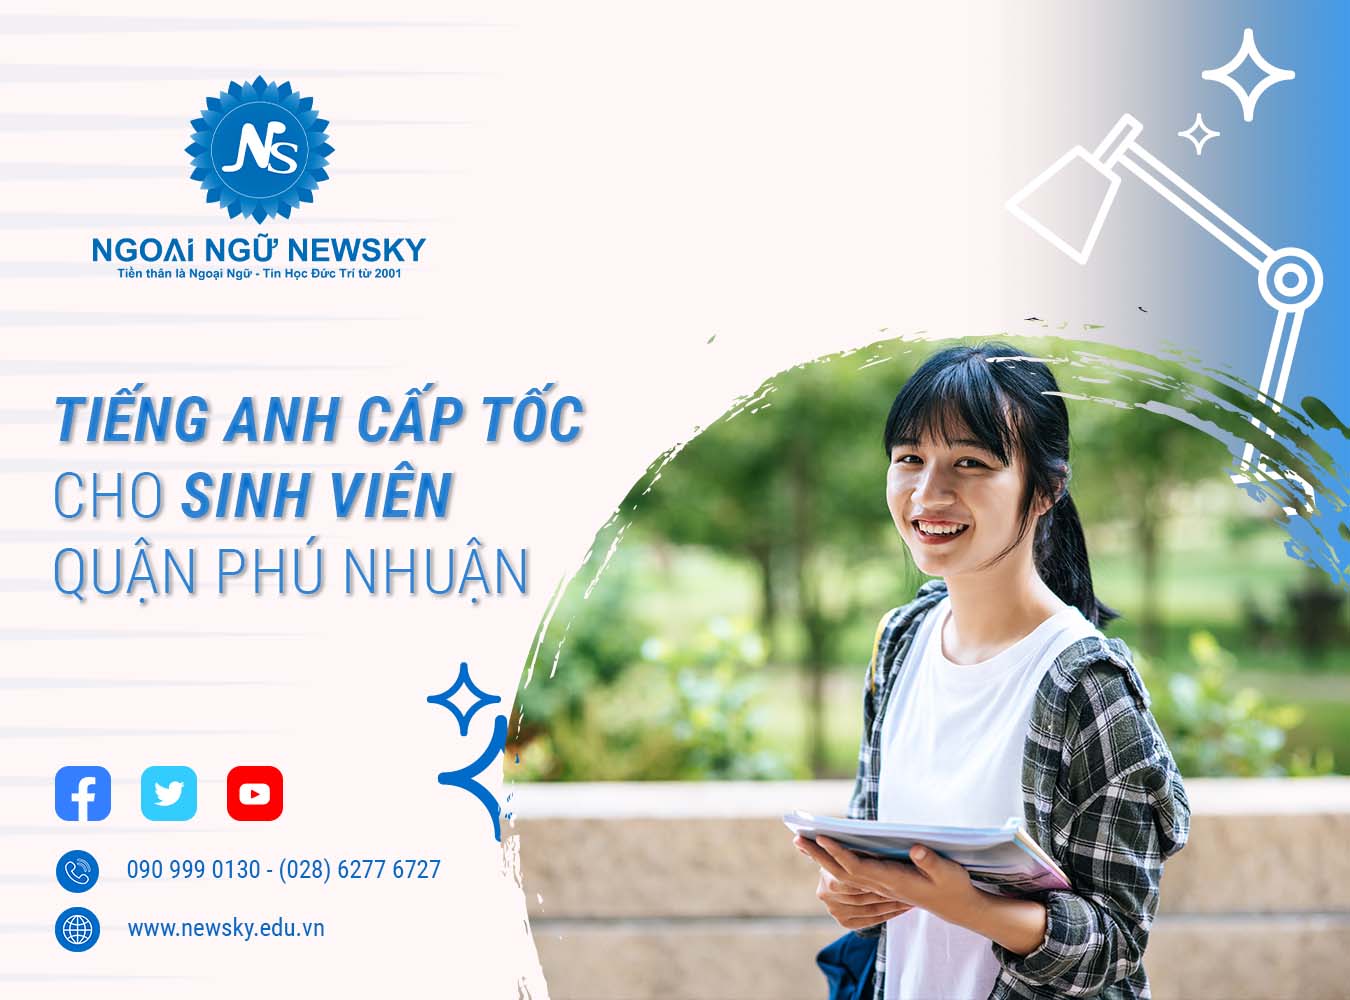 Tiếng Anh cấp tốc cho Sinh viên quận Phú Nhuận